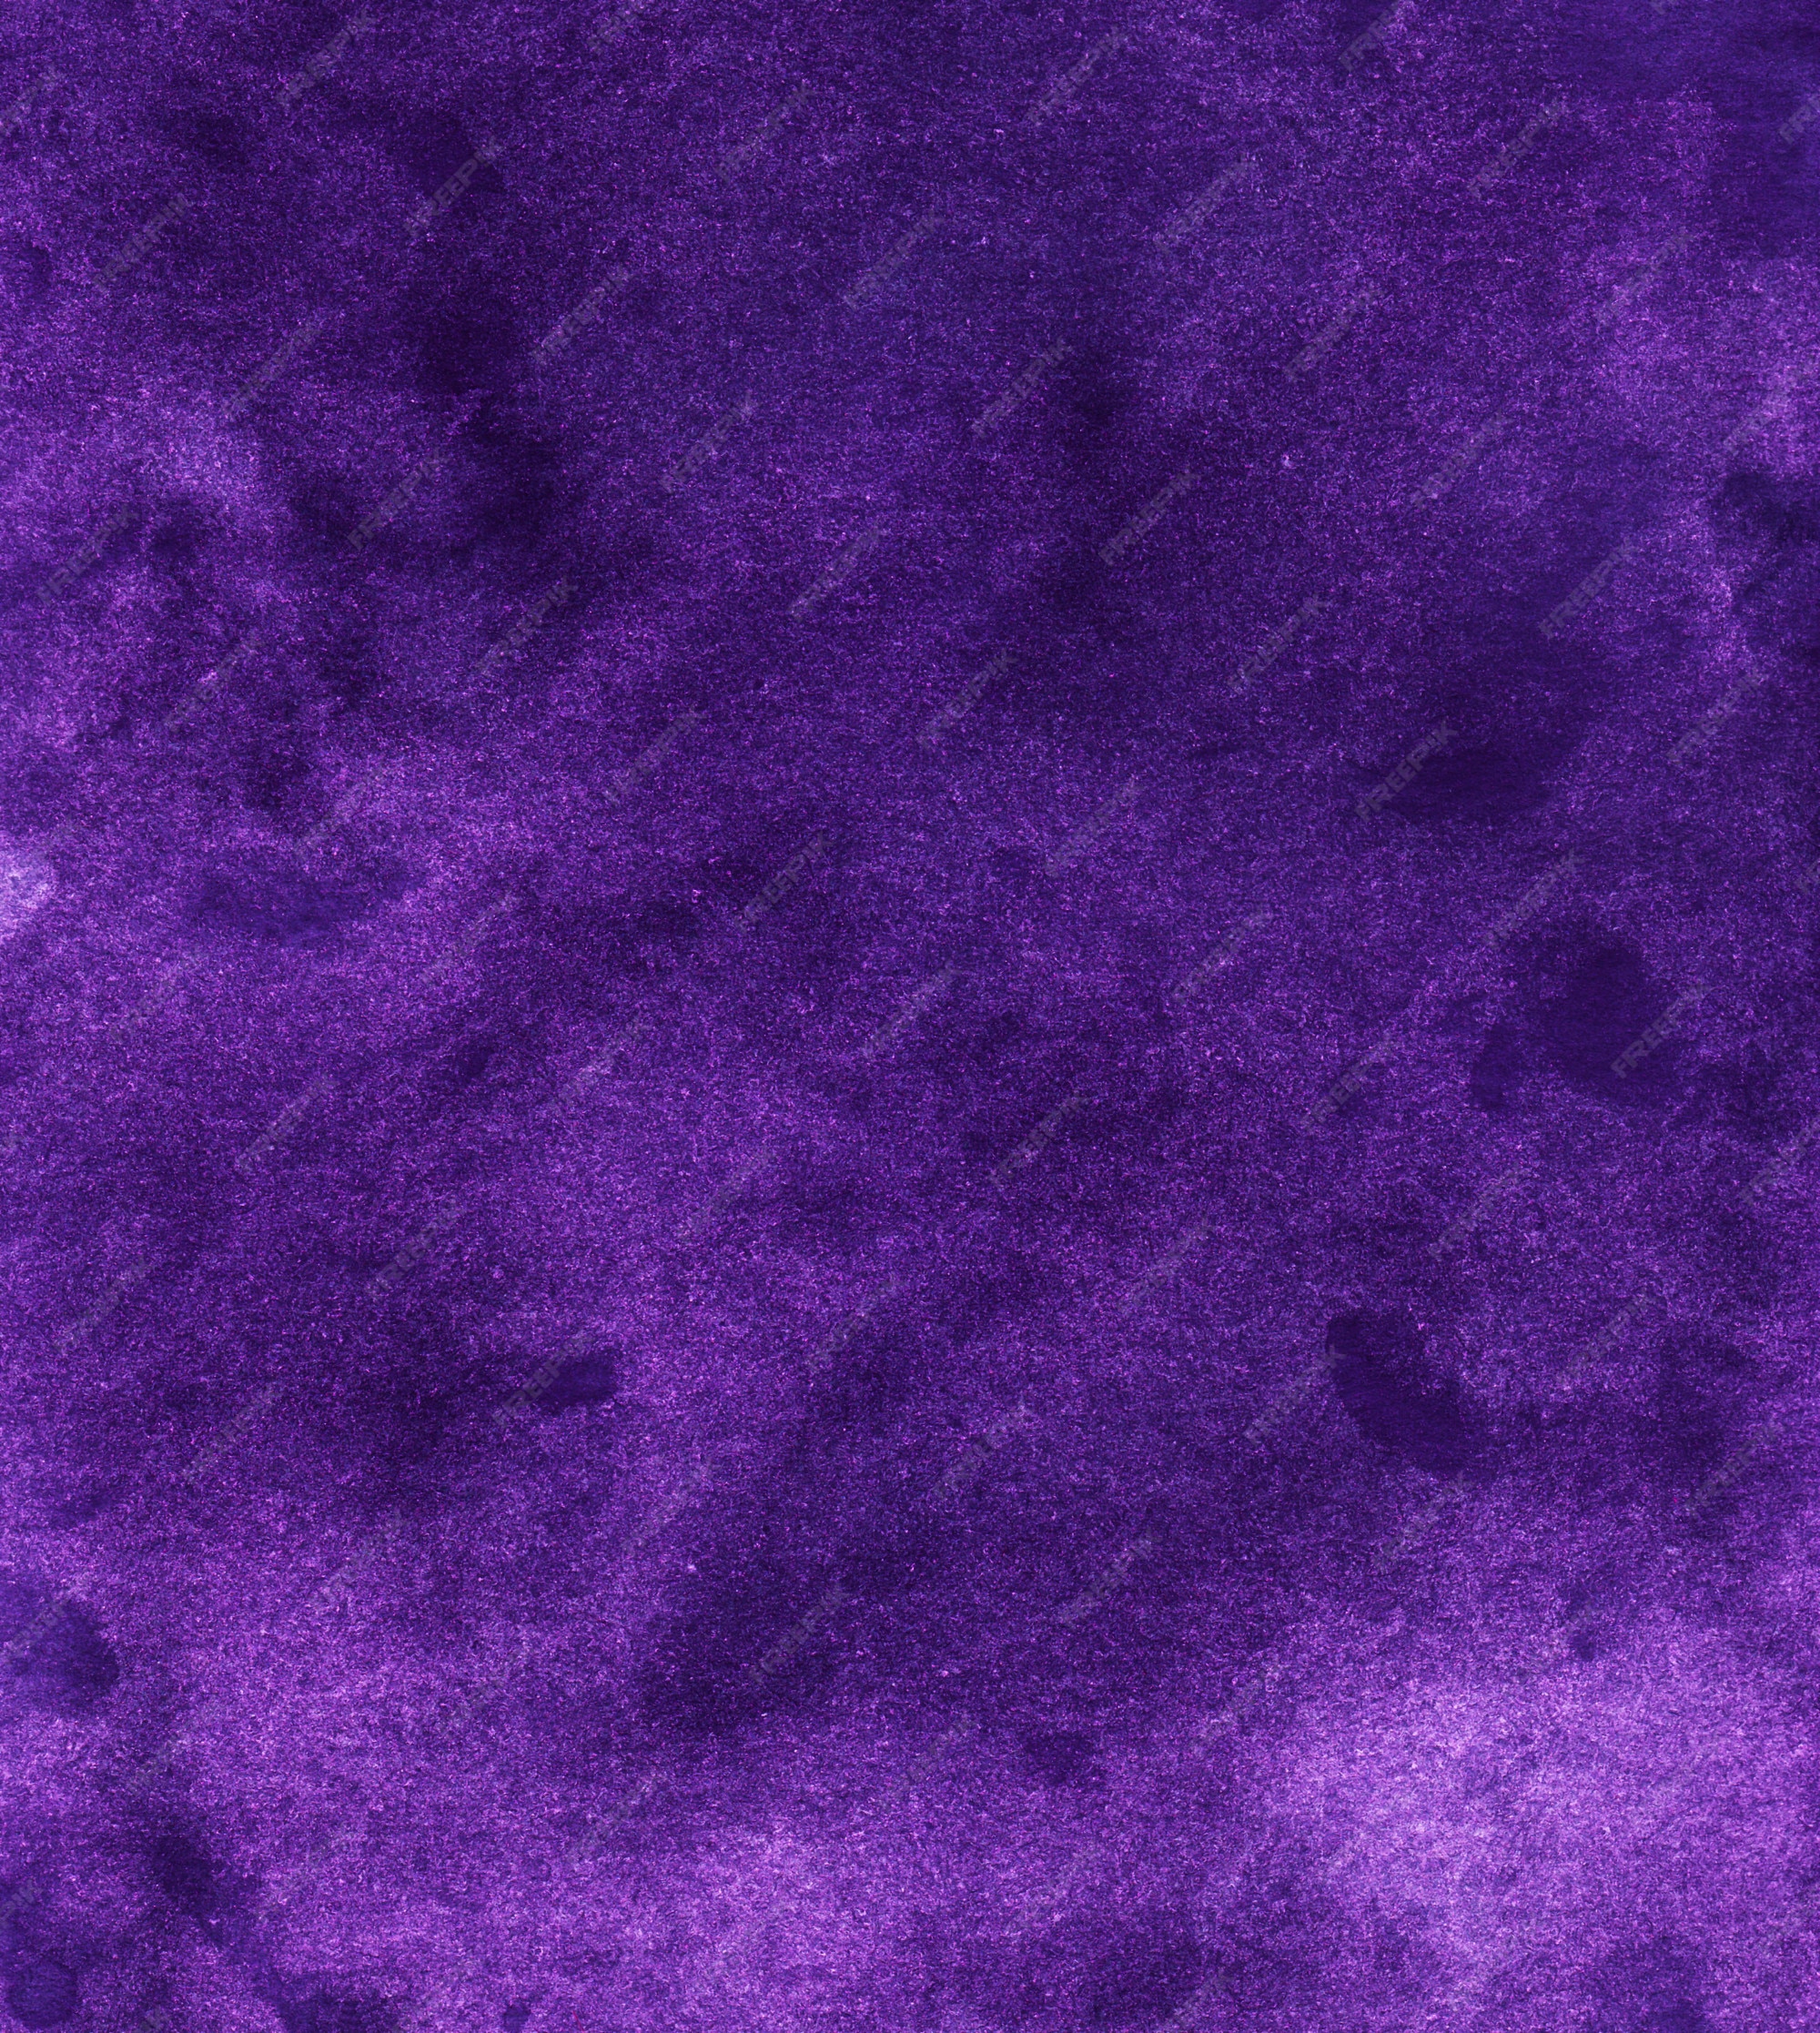 Premium Photo | Watercolor vintage deep violet background texture ...